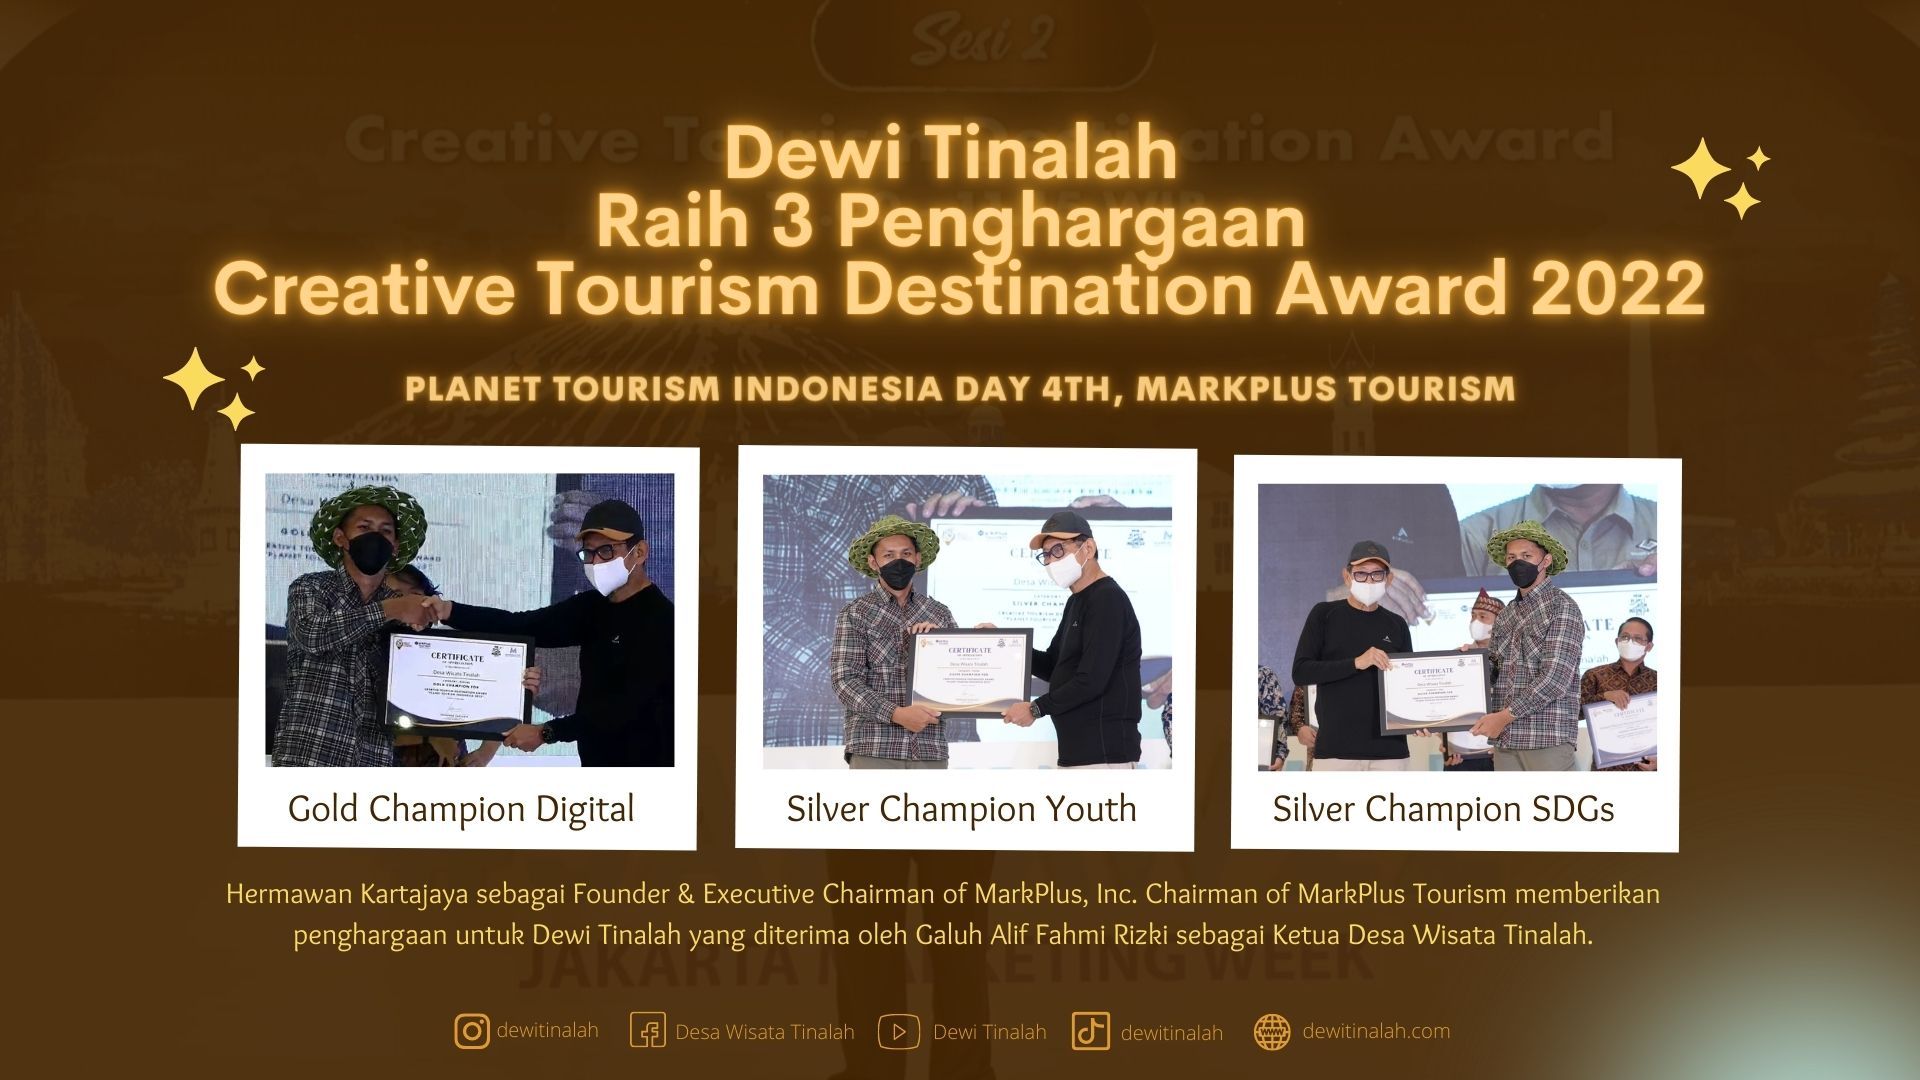 Dewi Tinalah - Creative Tourism Destination Award 2022